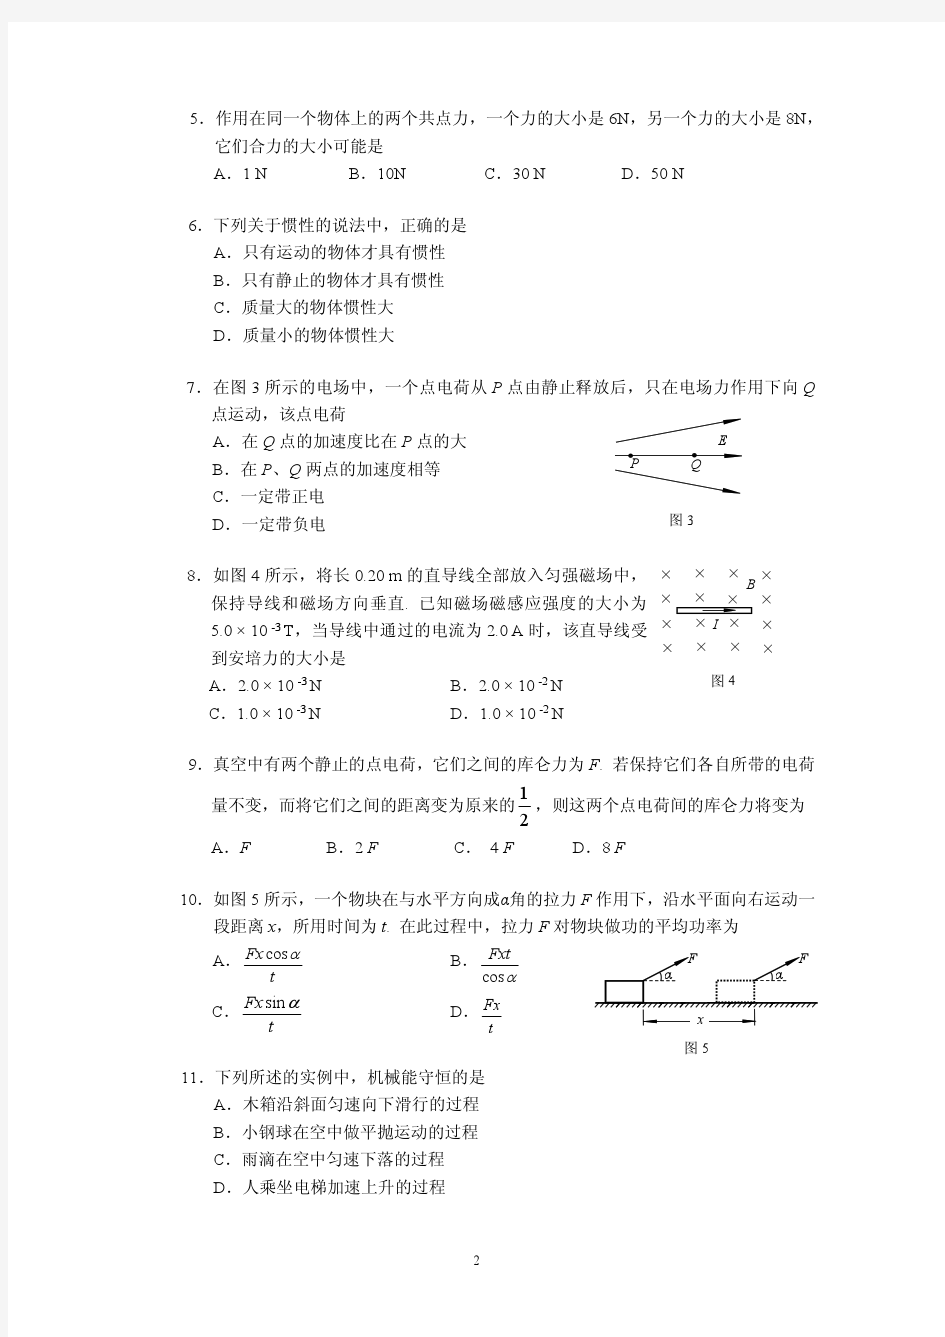 【2013北京会考资料】2010年北京夏季会考物理试题(含答案)